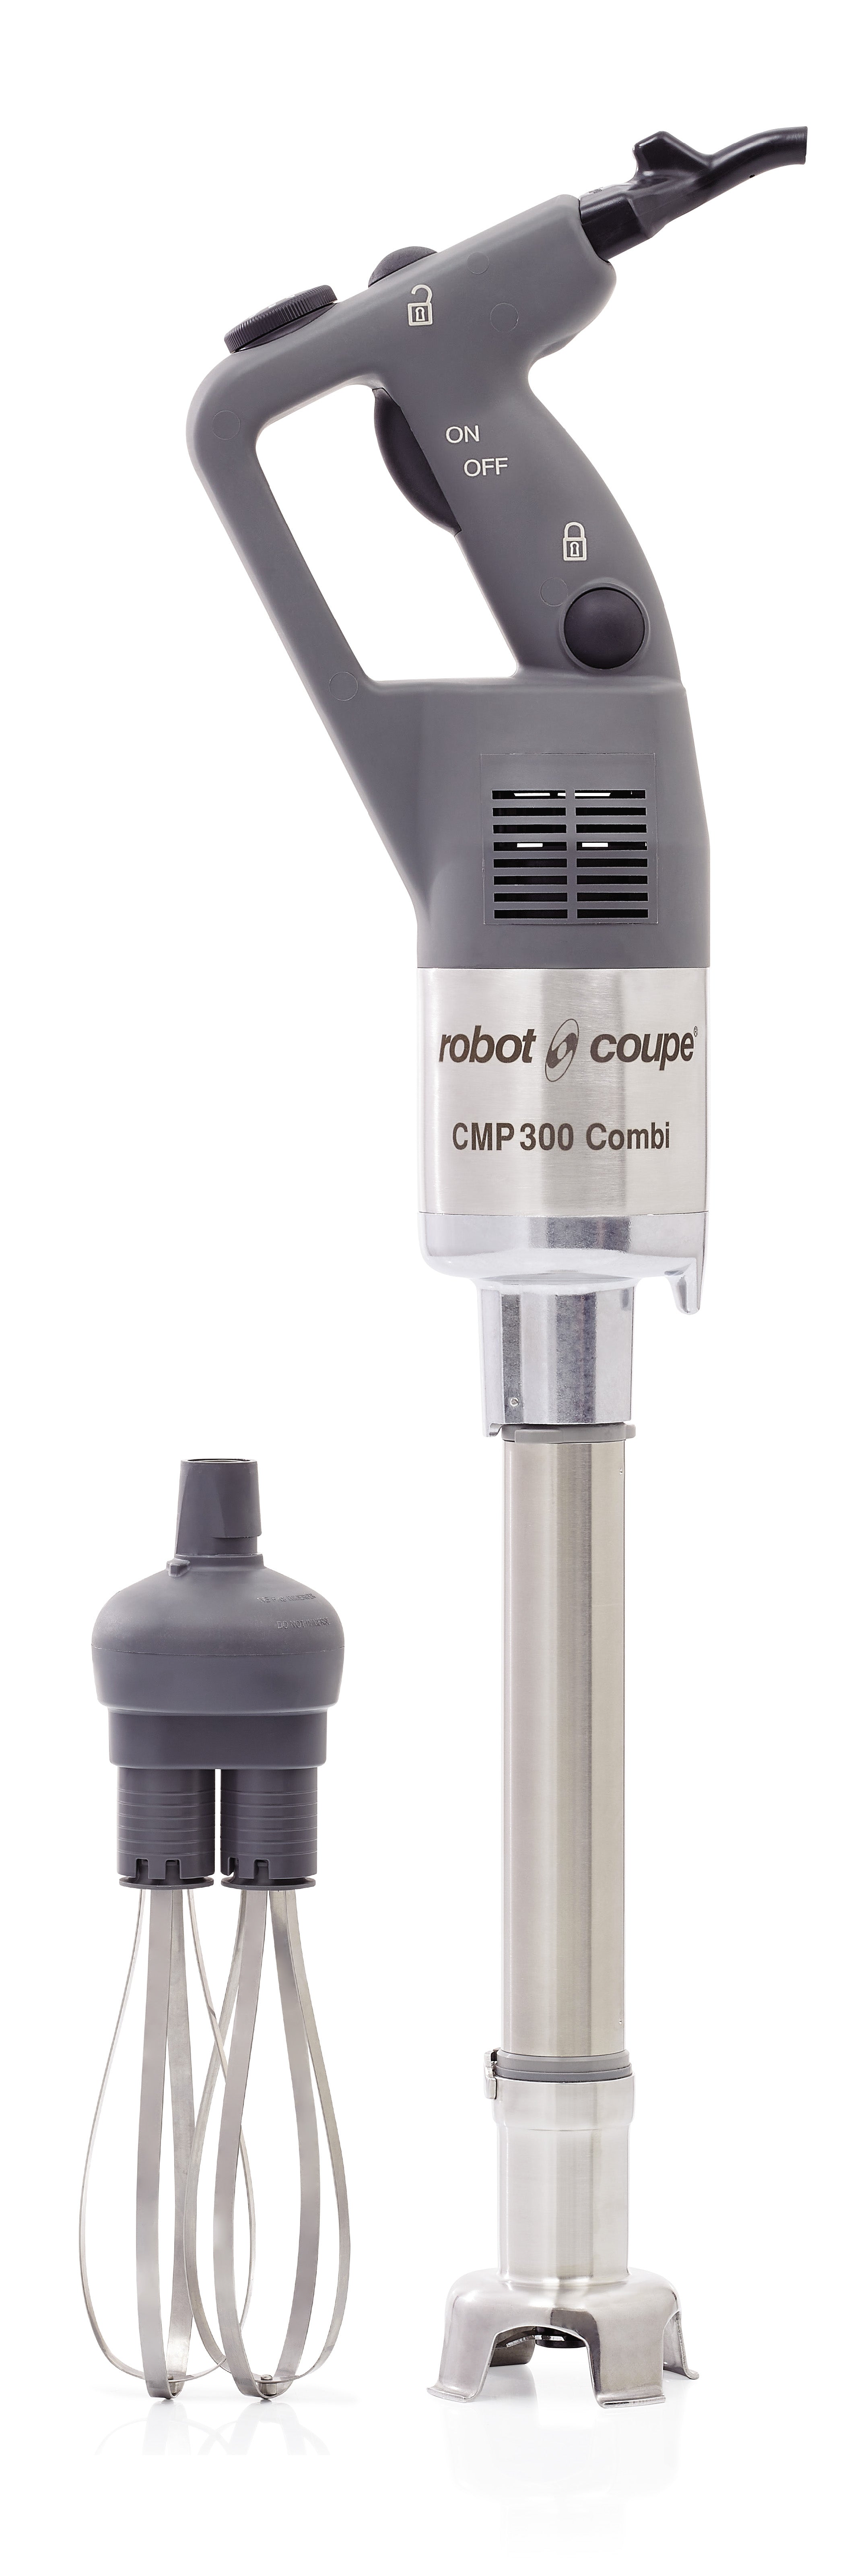 Thumbnail - Robot Coupe CMP300COMBI - Immersion Blender